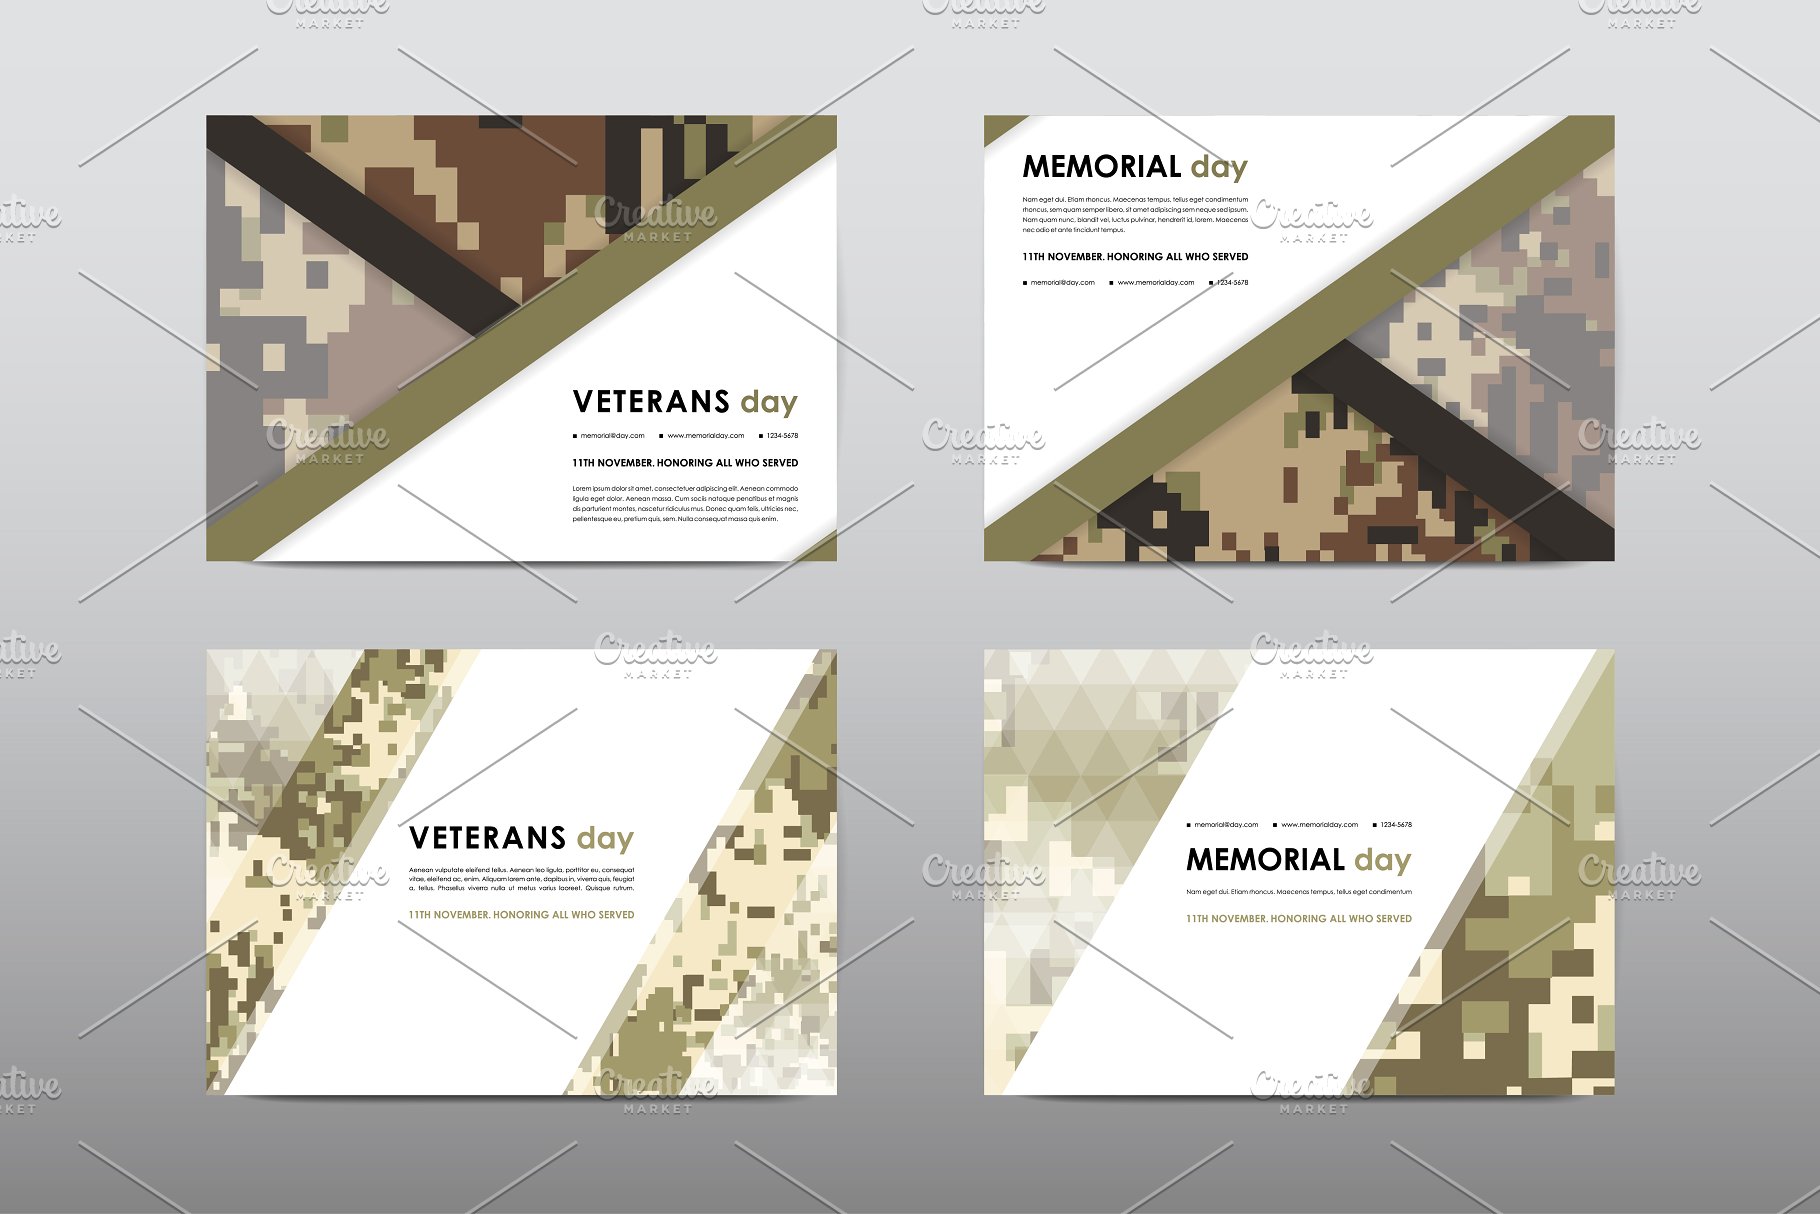 40+老兵节军人宣传小册模板 Veteran’s Day Brochures Bundle插图(36)